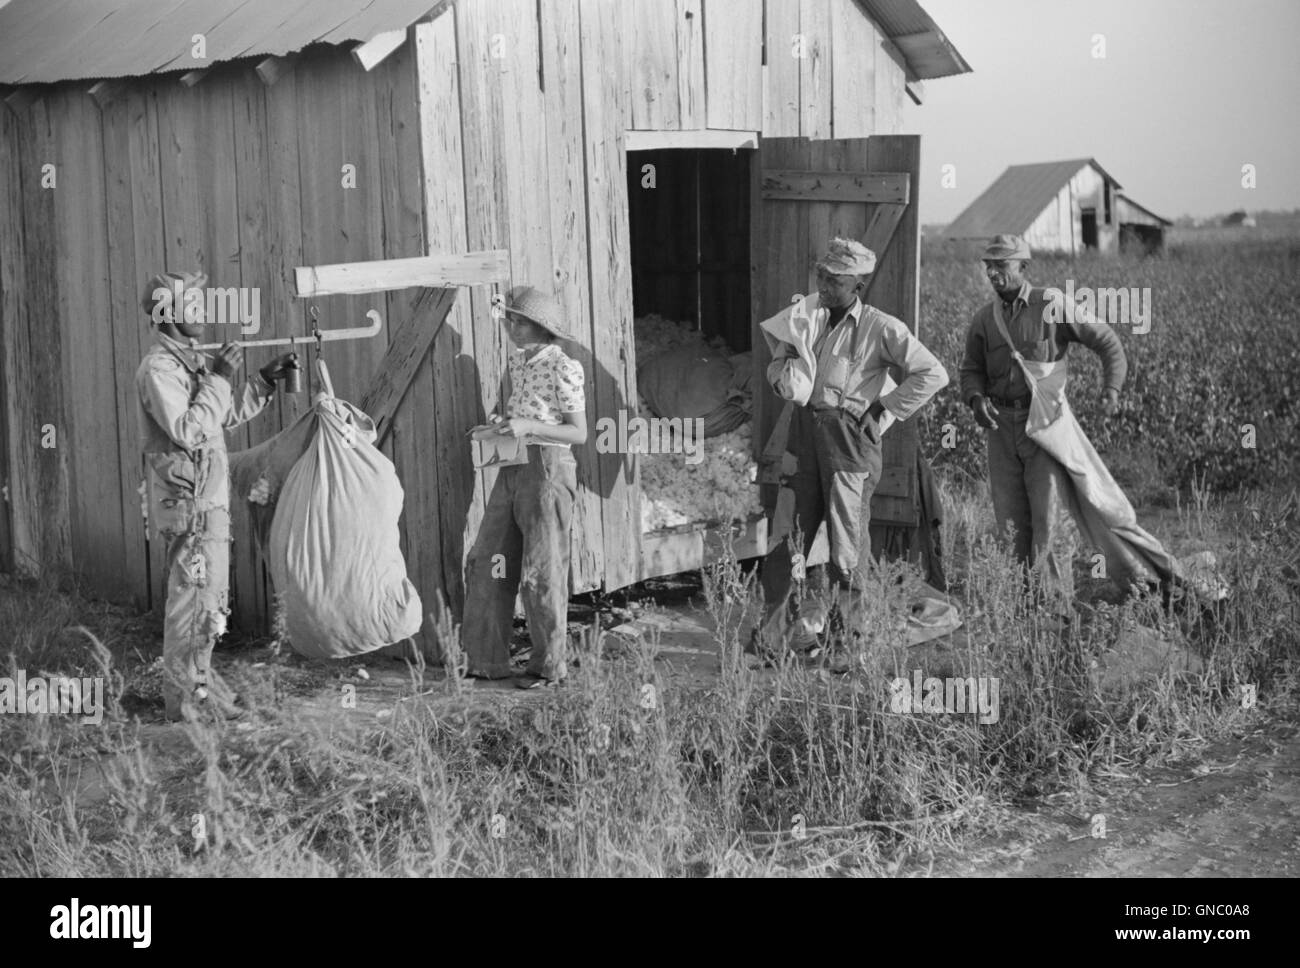 Mann mit einem Gewicht von Baumwolle, Farm Security Administration (FSA) Projekt, Sonnenblumen-Plantage, Merigold, Mississippi, USA, Marion Post Wolcott für Farm Security Administration, Oktober 1939 Stockfoto